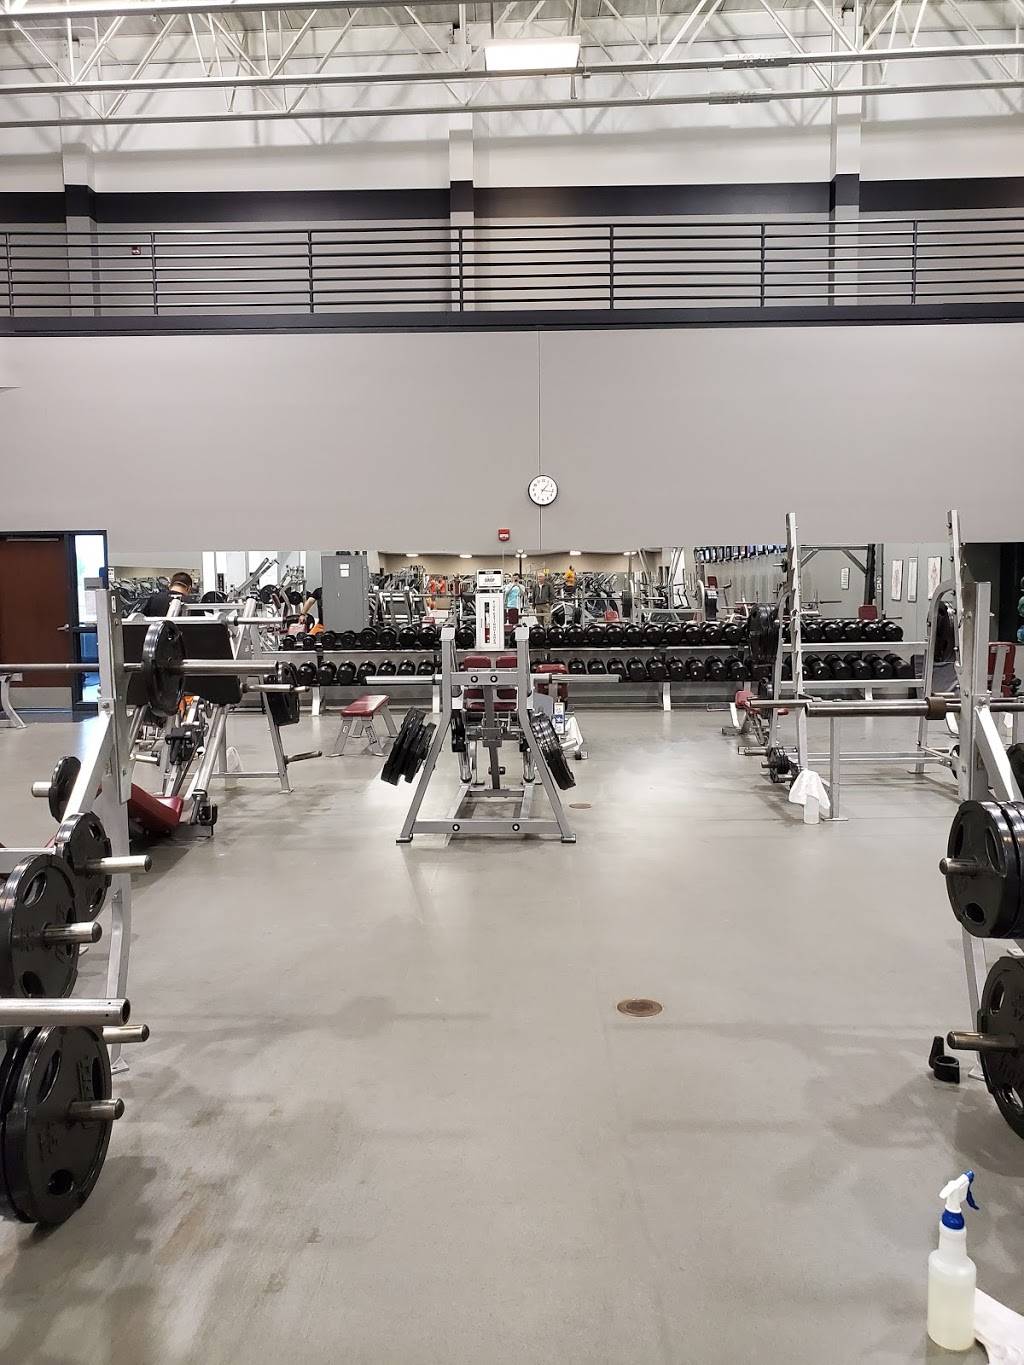 Textron Aviation Employees Club Fitness Center - gym  | Photo 1 of 3 | Address: 6711 W 31st St S, Wichita, KS 67215, USA | Phone: (316) 517-2800